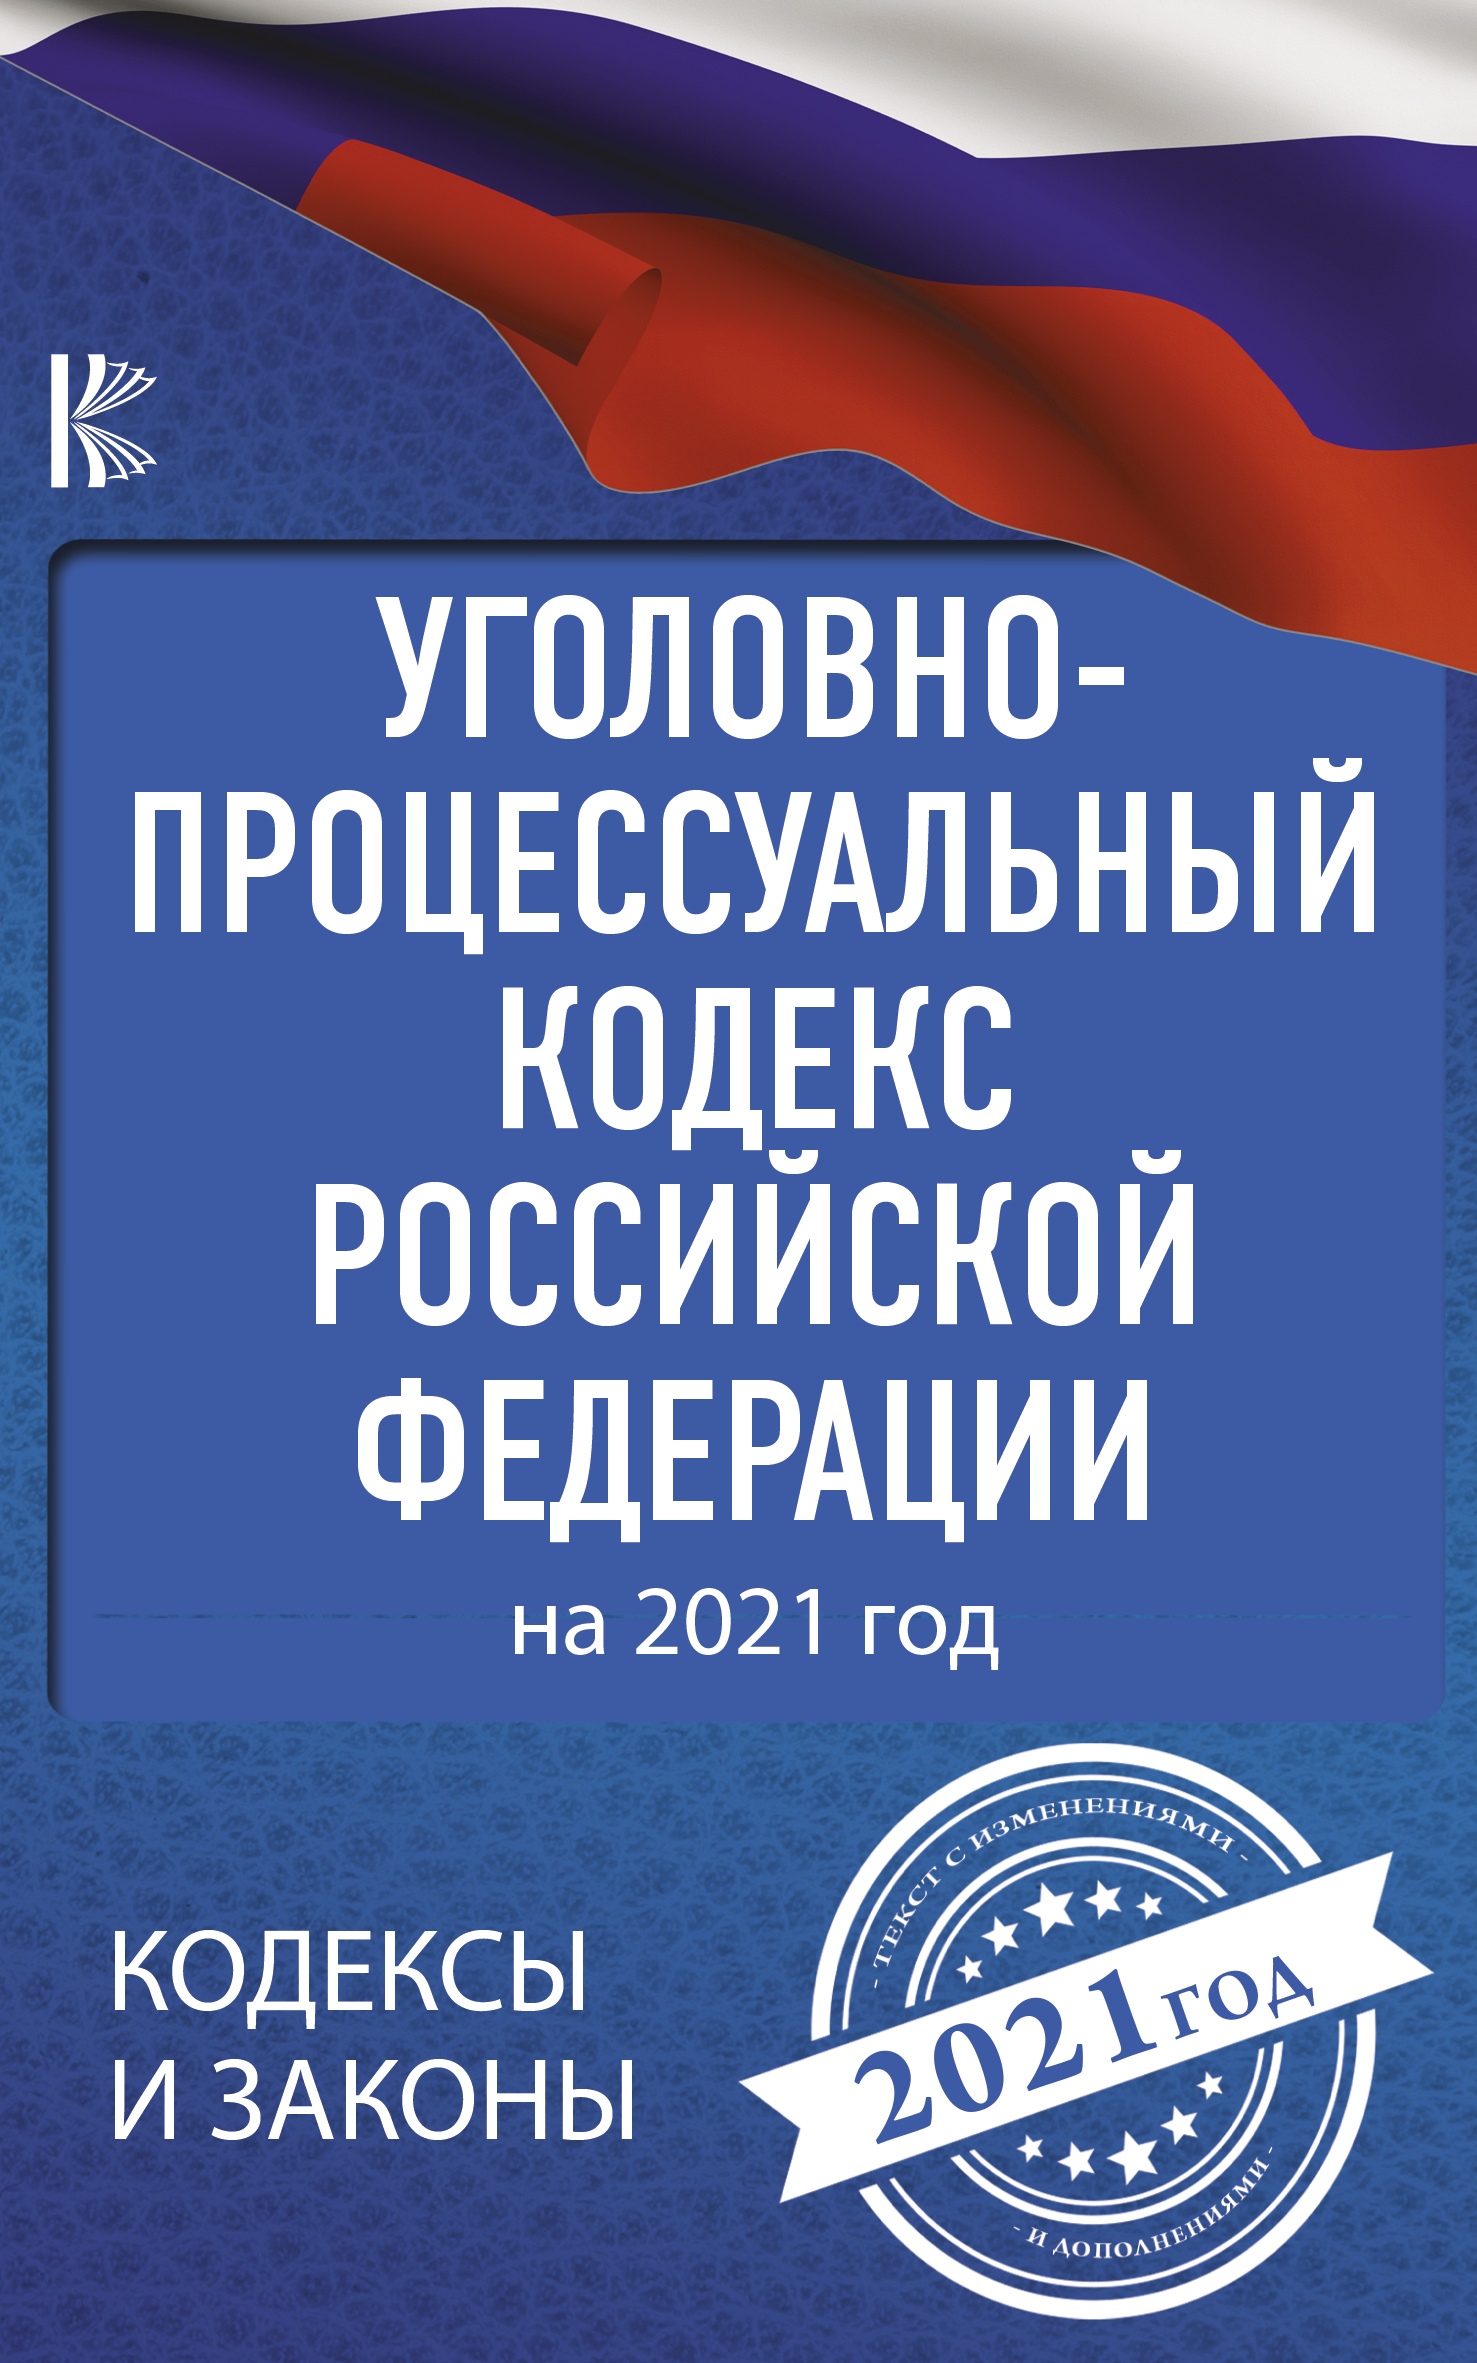  Уголовно-процессуальный кодекс Российской Федерации на 2021 год - страница 0